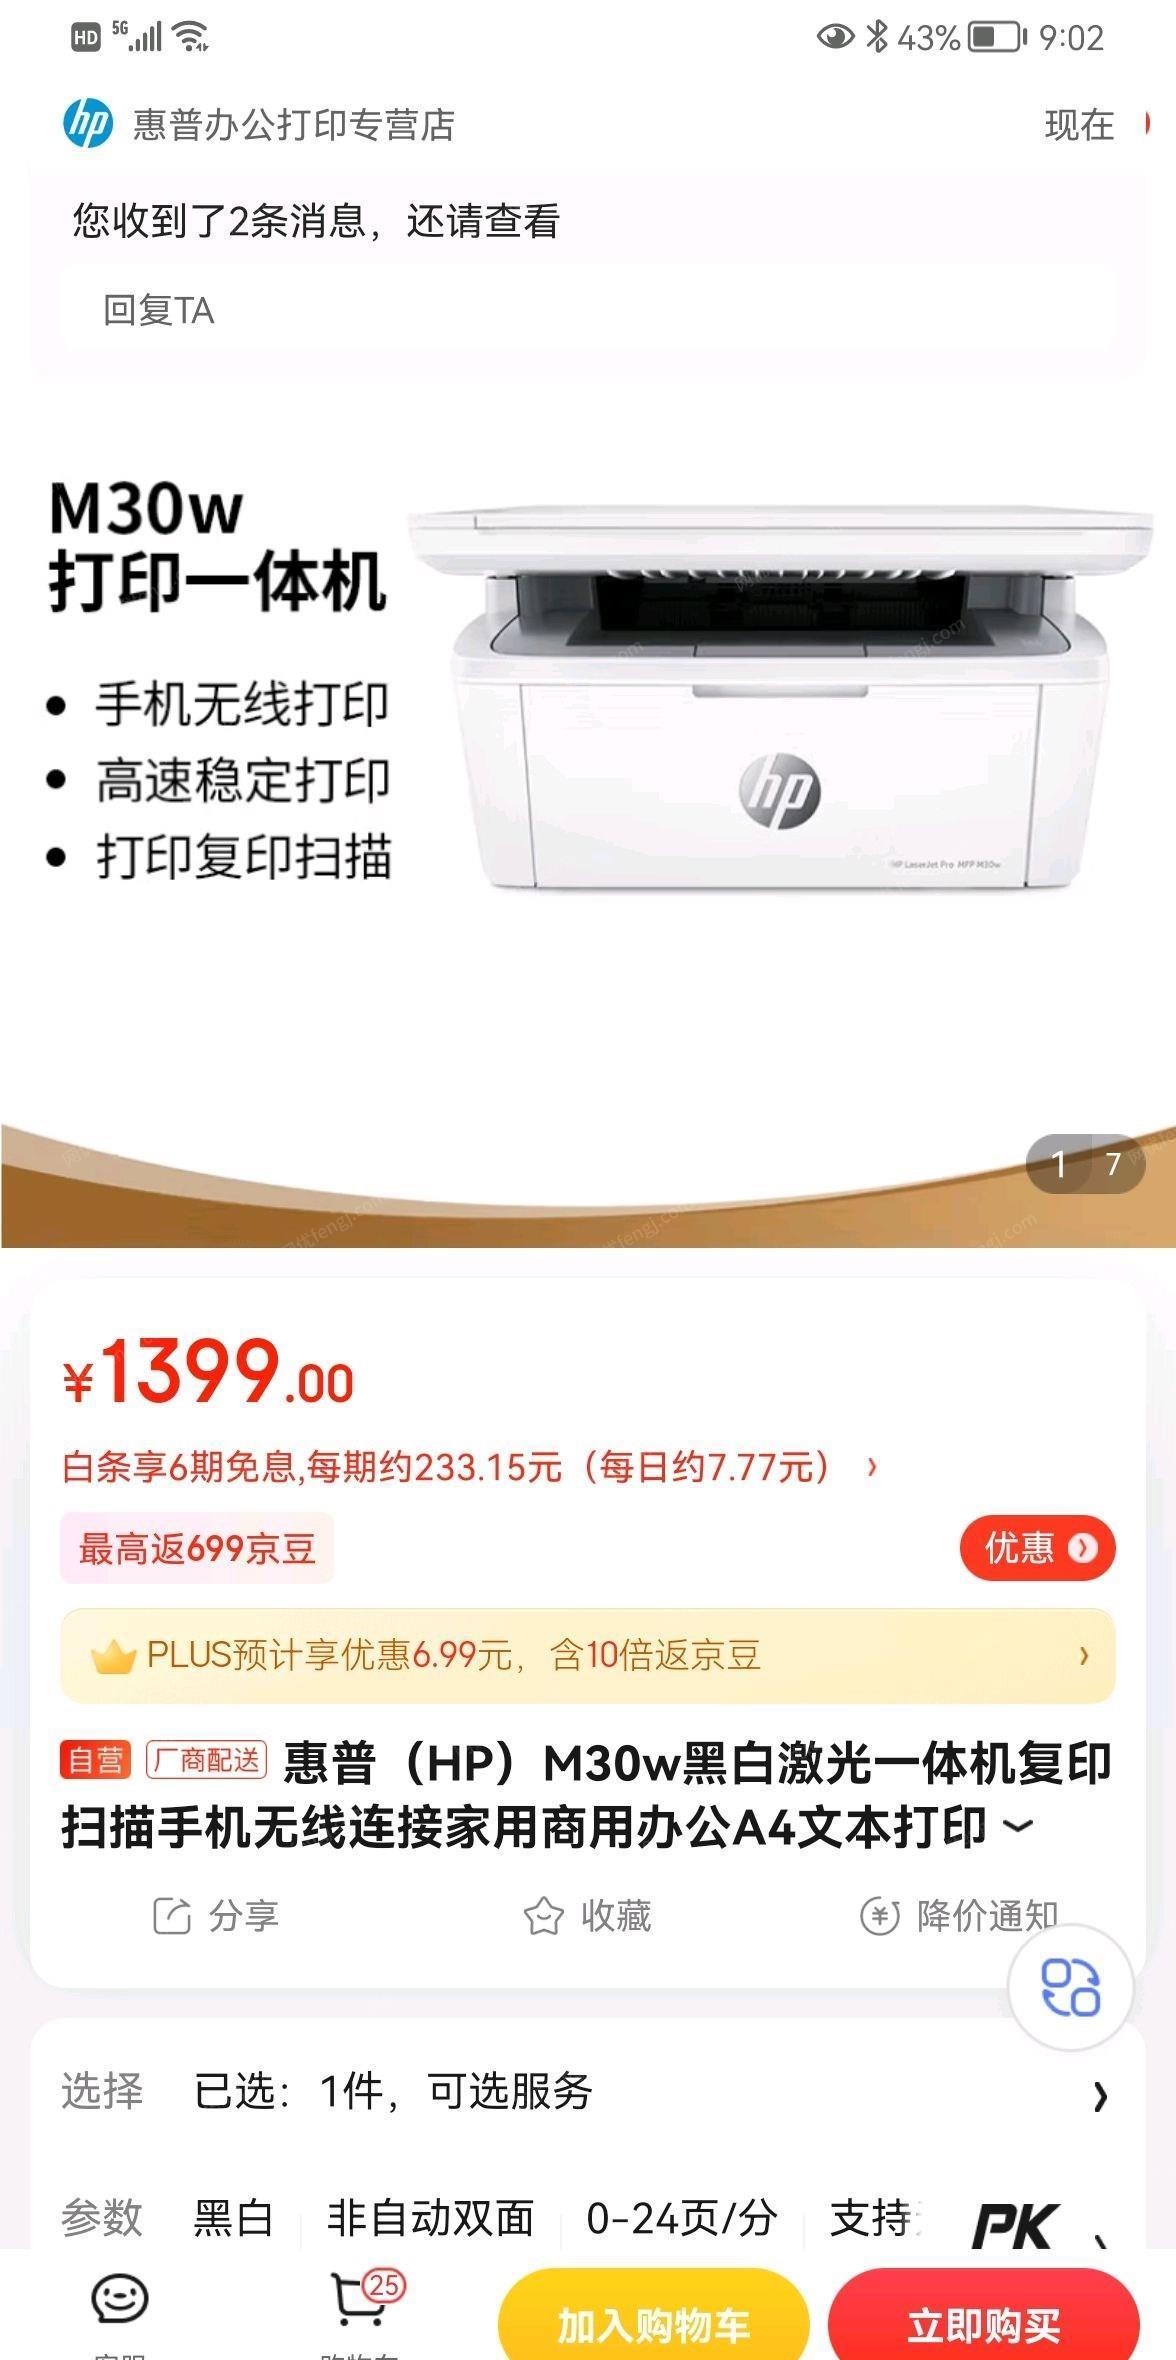 云南昆明惠普打印一体机出售